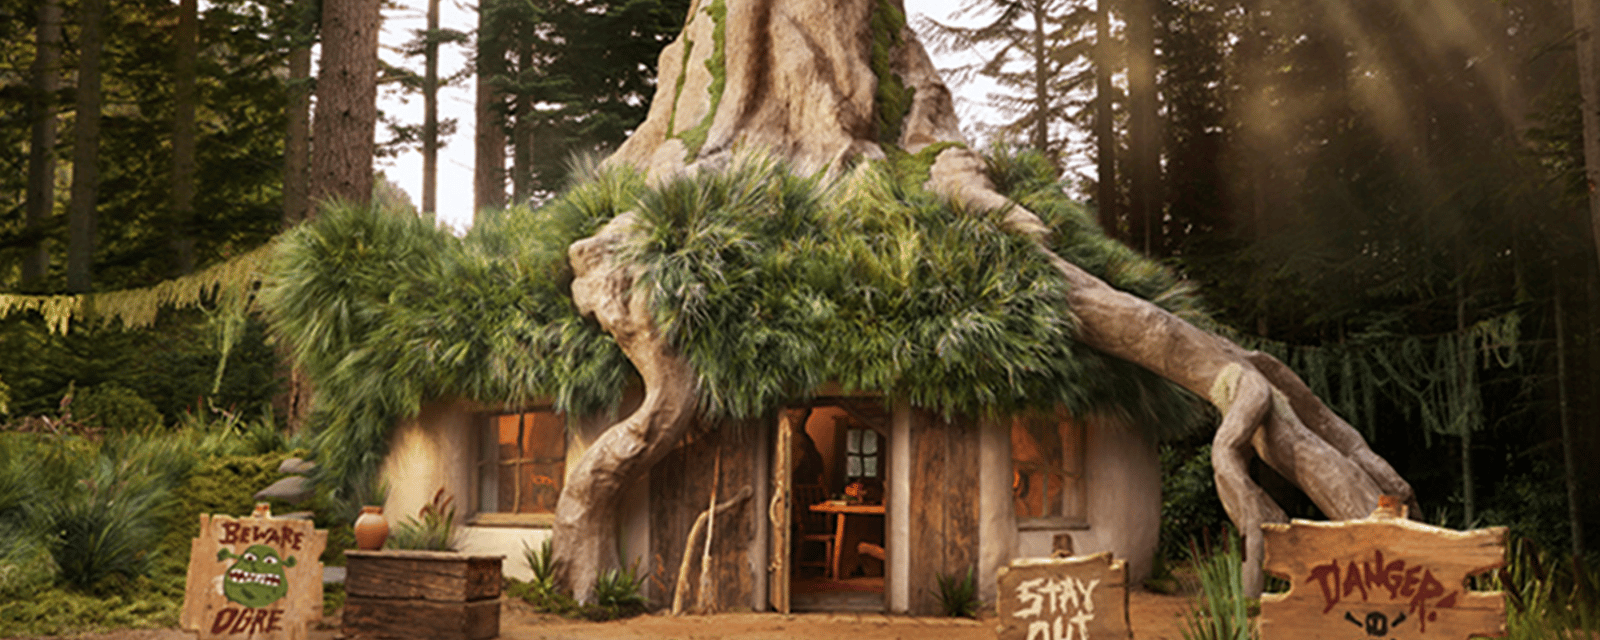 Cette maisonnette inspirée de Shrek vient d'ouvrir ses portes et vous pouvez y séjourner gratuitement.